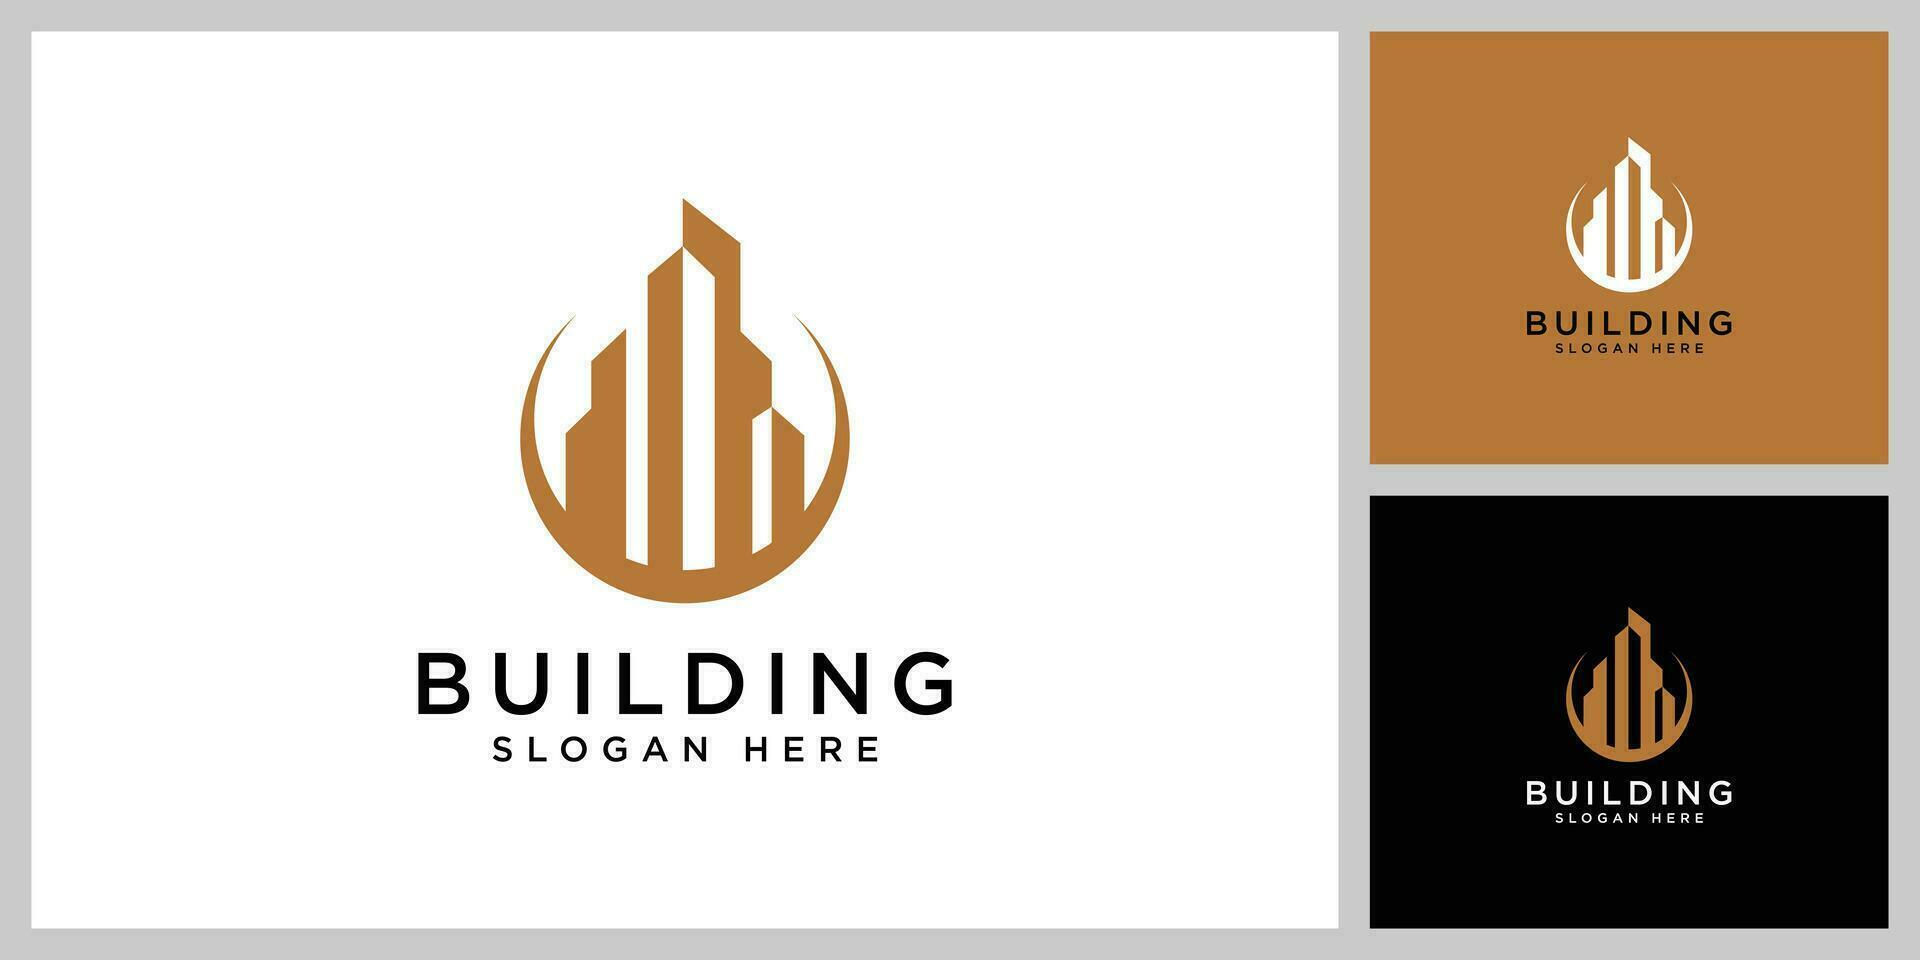 Building logo vector design template